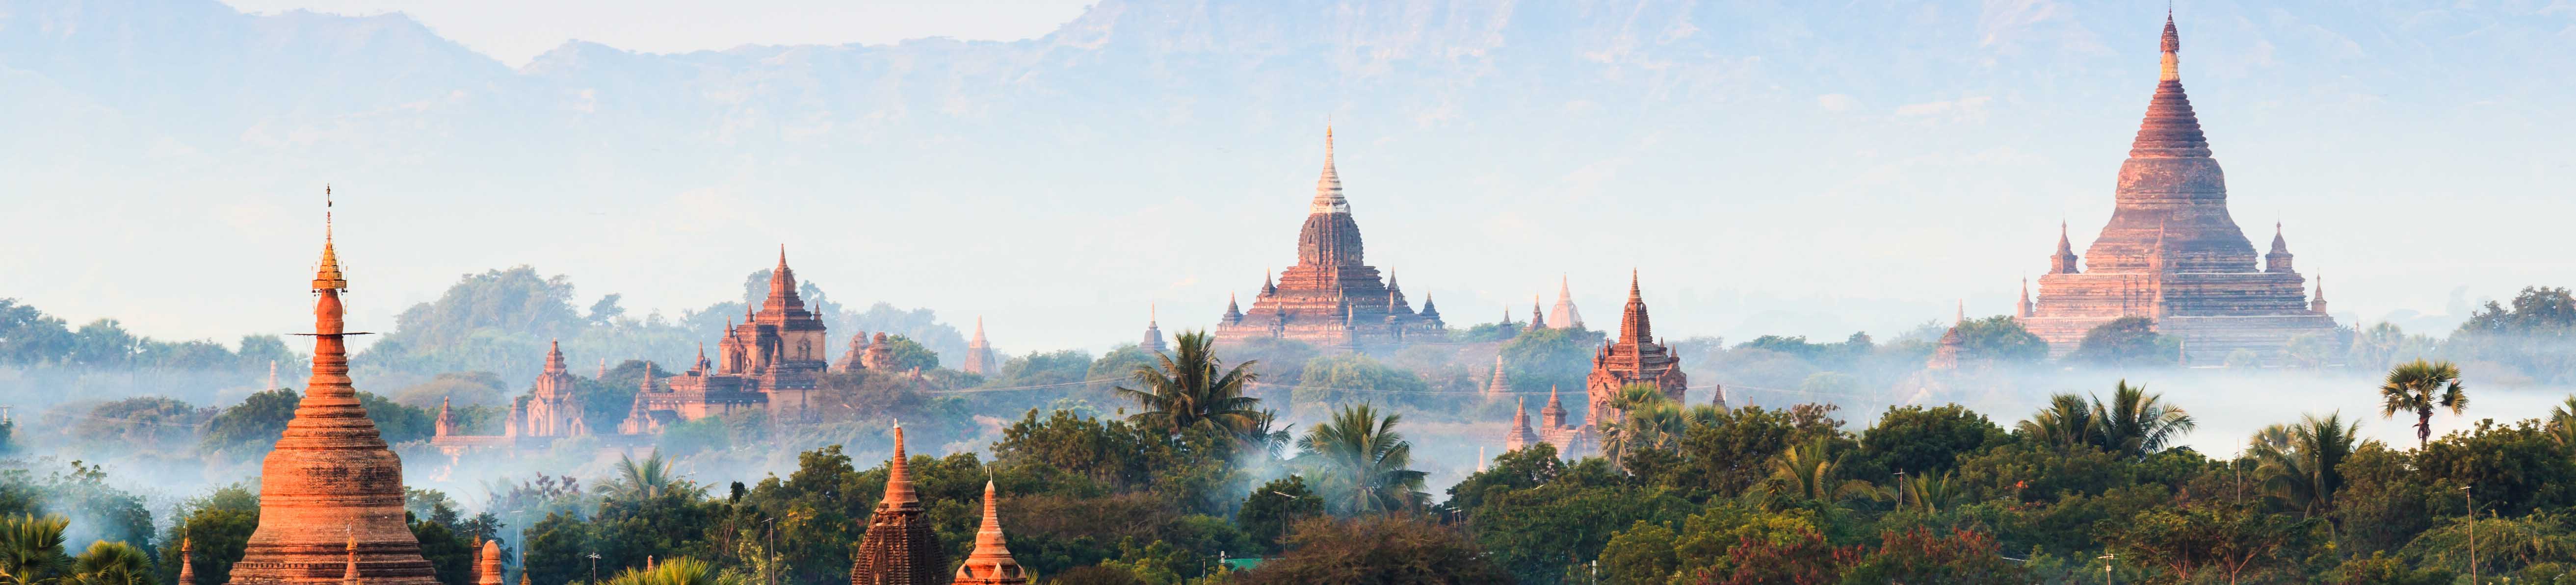 Birmanie tourisme